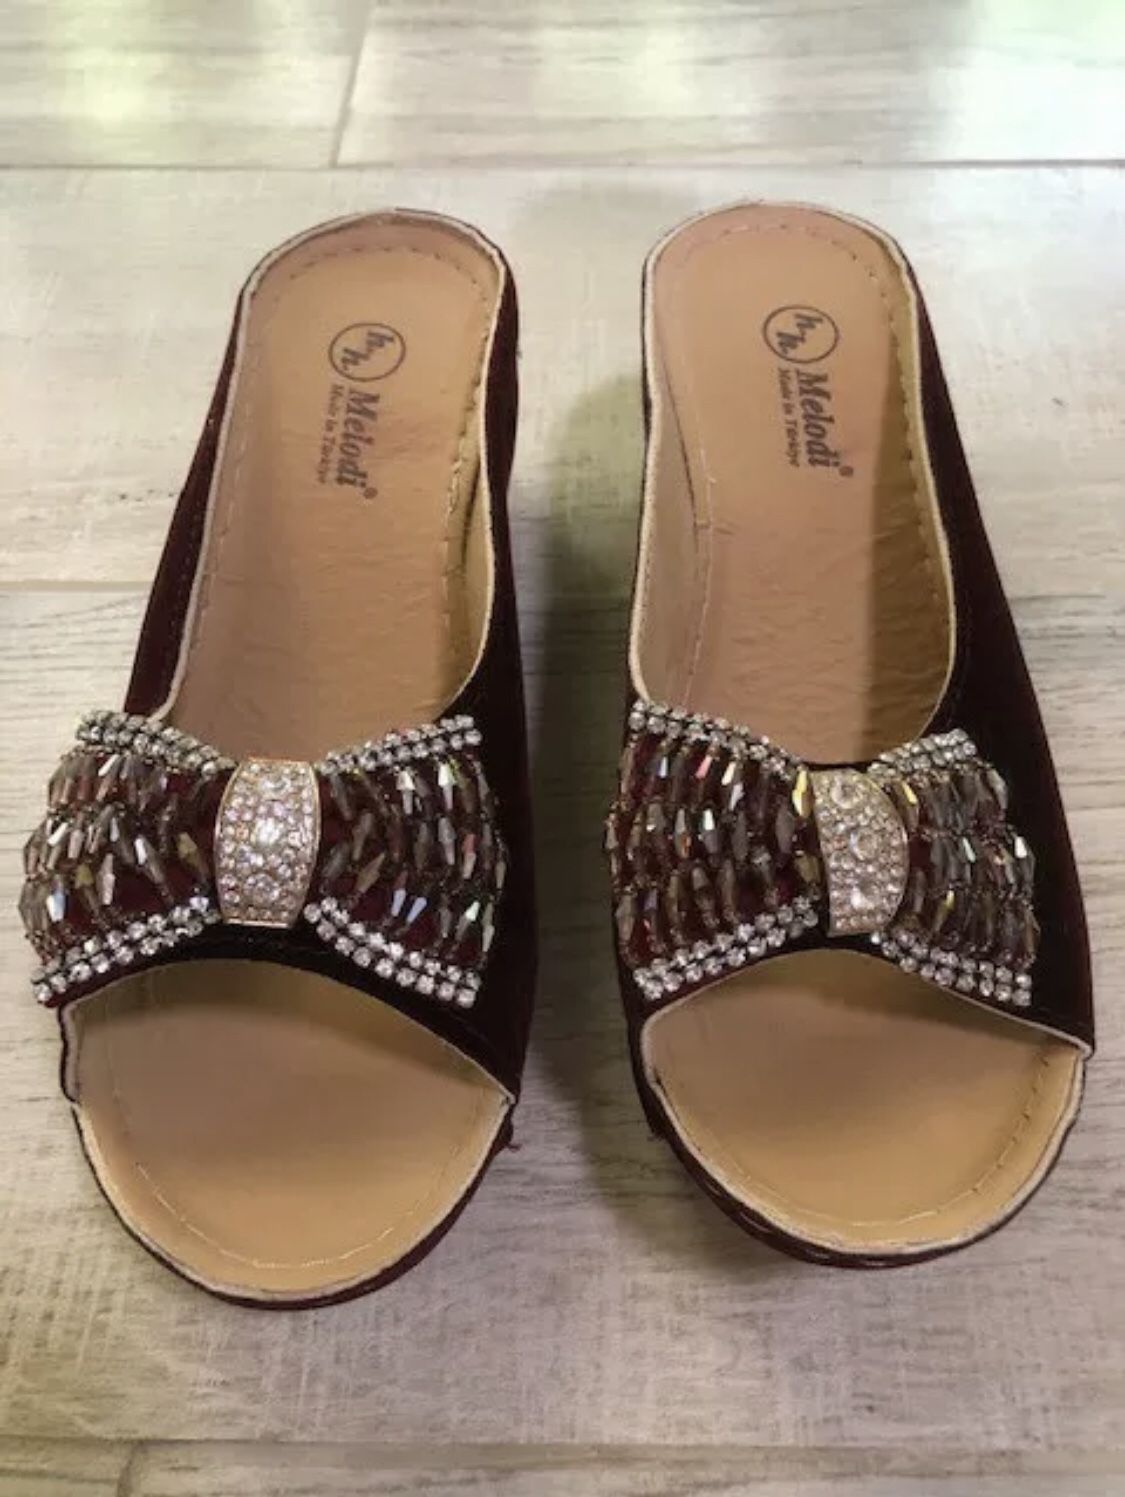 Women's H.H. Melodi Suede Open Toe Luxury Shoes Sandals Platform. Size 9.5.